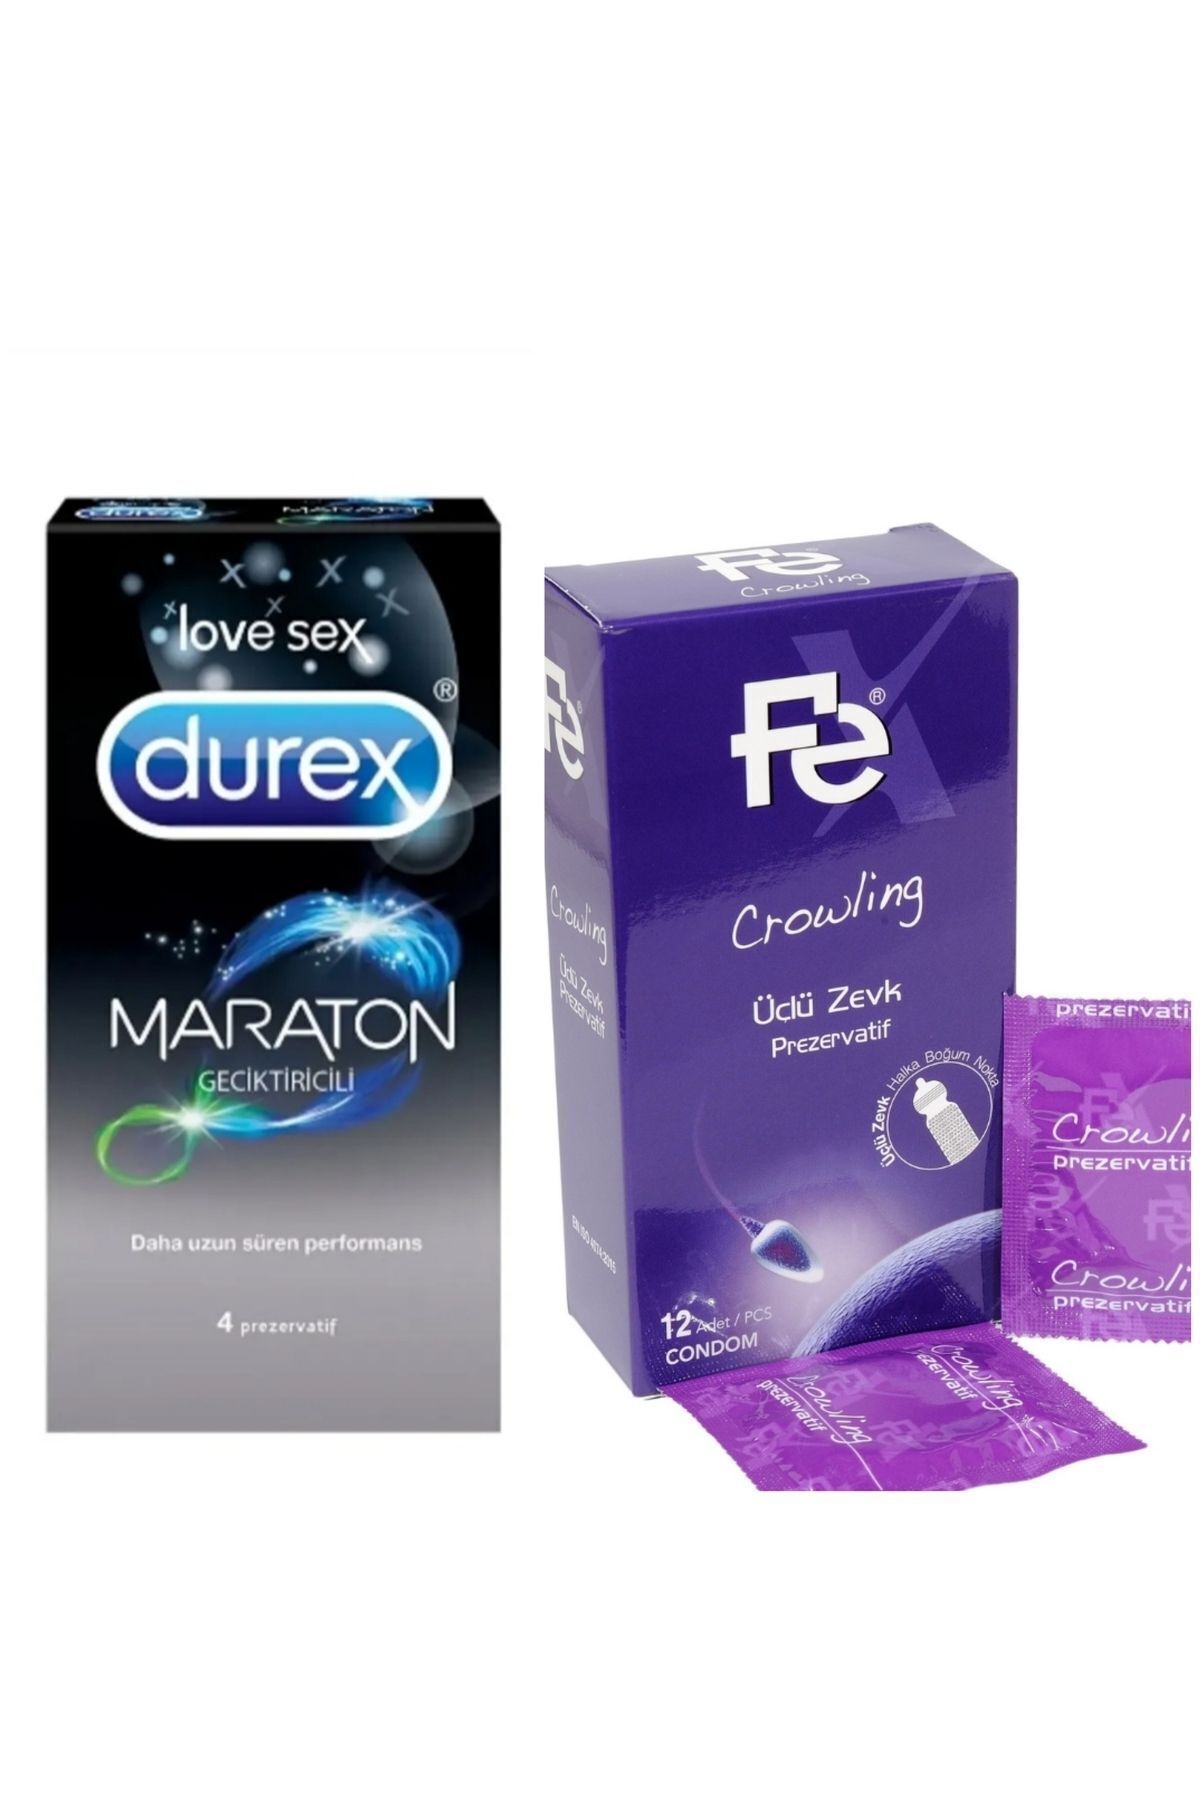 Durex Maraton 4 Lü Prezervatiflovesex Kadın Farklı Hazzı Tırtıklıboğumluuçluhazzınvajinal12 Lı Prezervatif